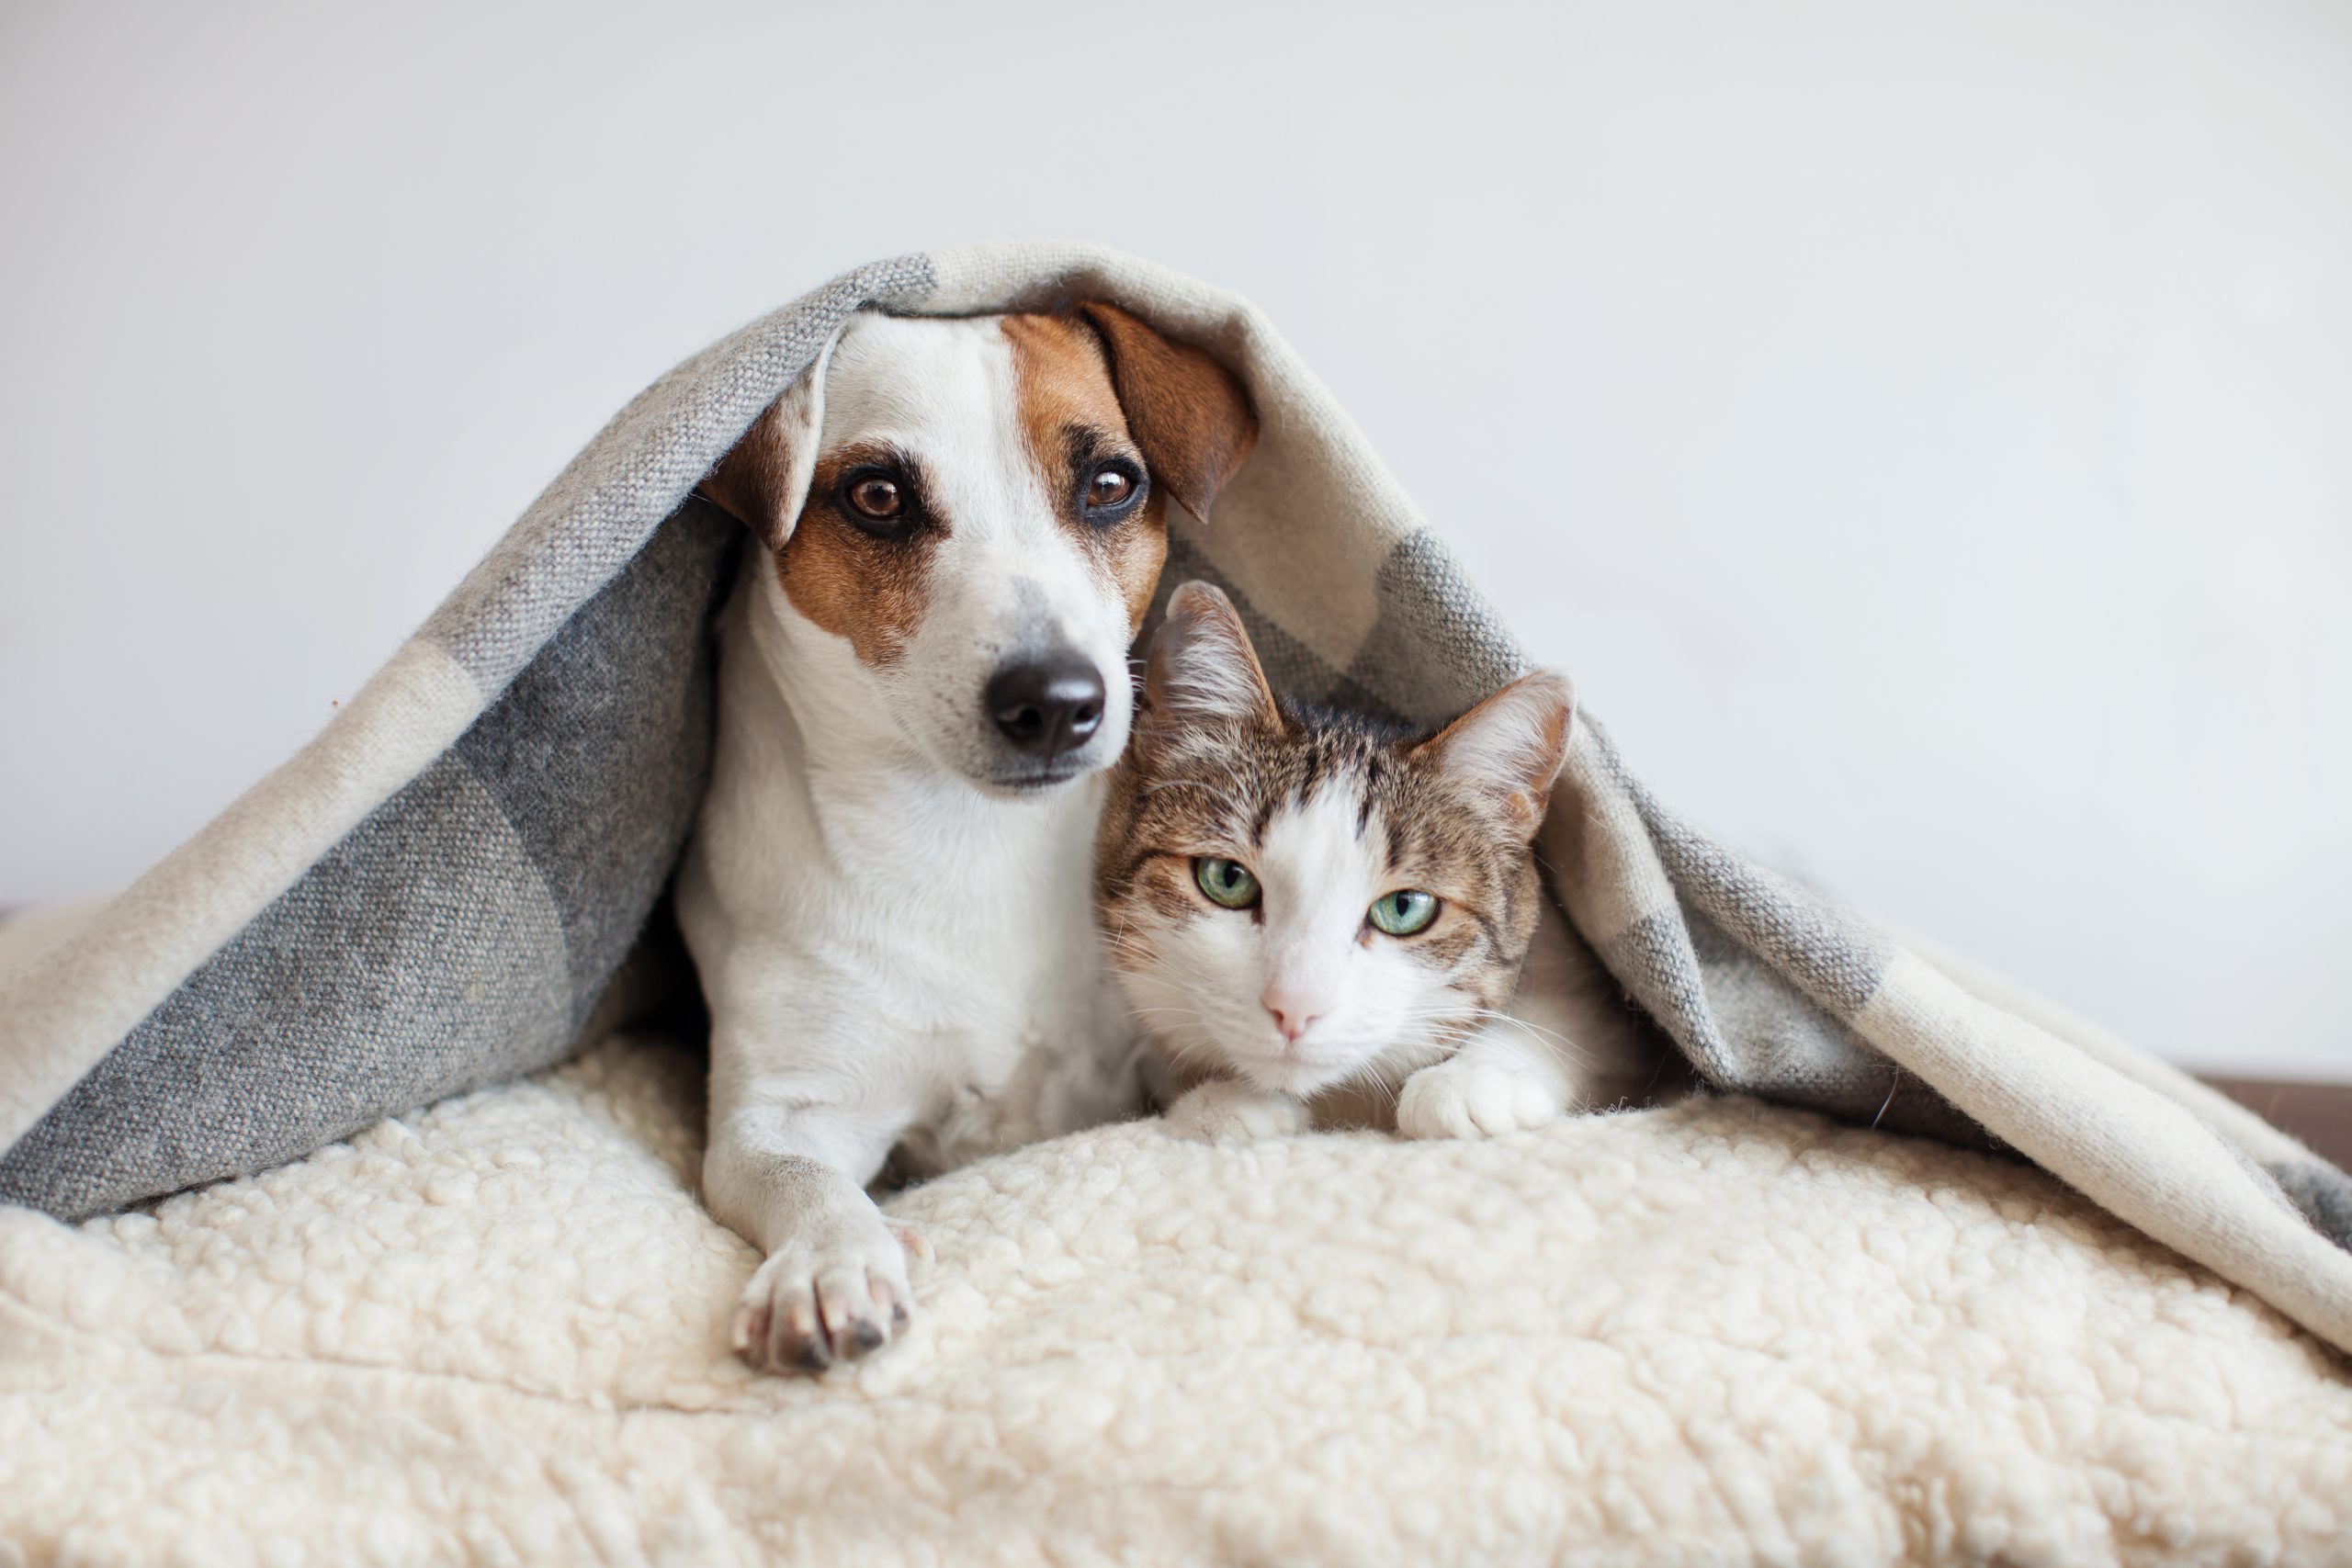 Cat and dog cuddling under blanket ©Gladskikh Tatiana